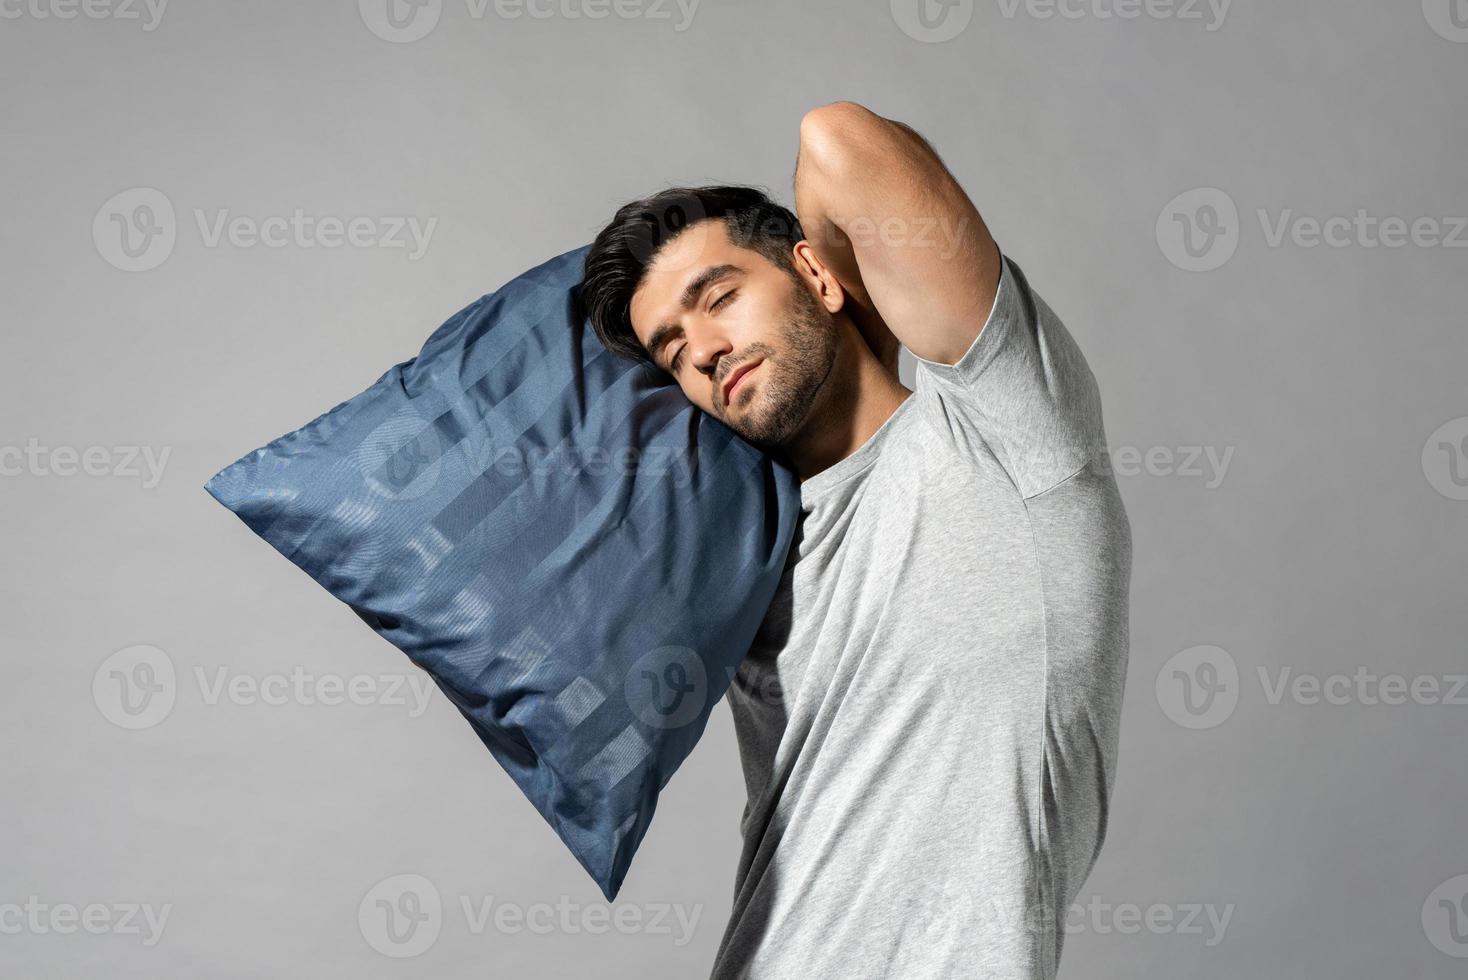 jovem dormindo segurando seu travesseiro em pé no fundo do estúdio isolado cinza claro, conceito de sonambulismo foto